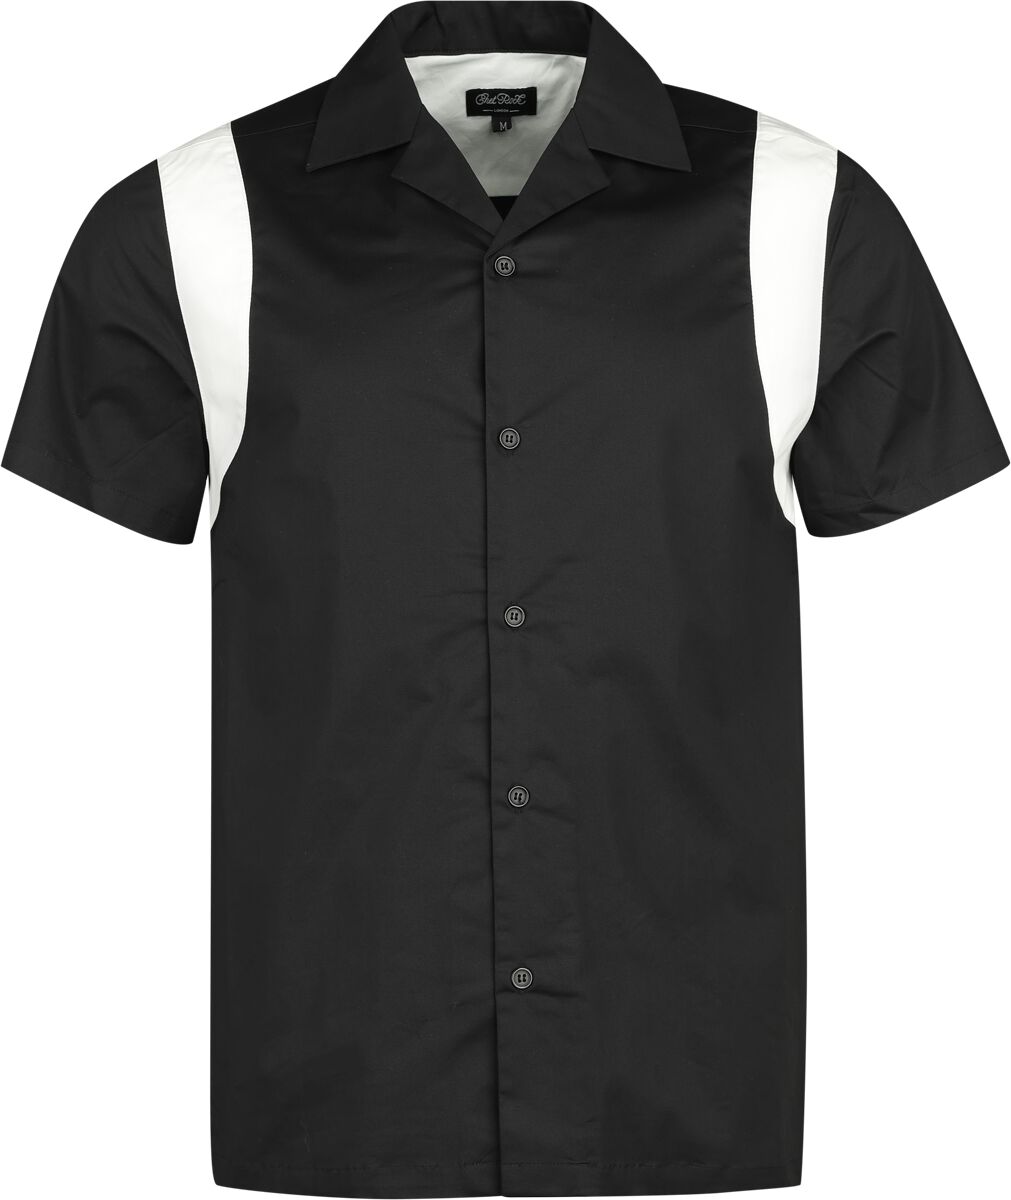 Chet Rock - Rockabilly Kurzarmhemd - Marty Bowling Shirt - S bis XL - für Männer - Größe XL - schwarz/weiß